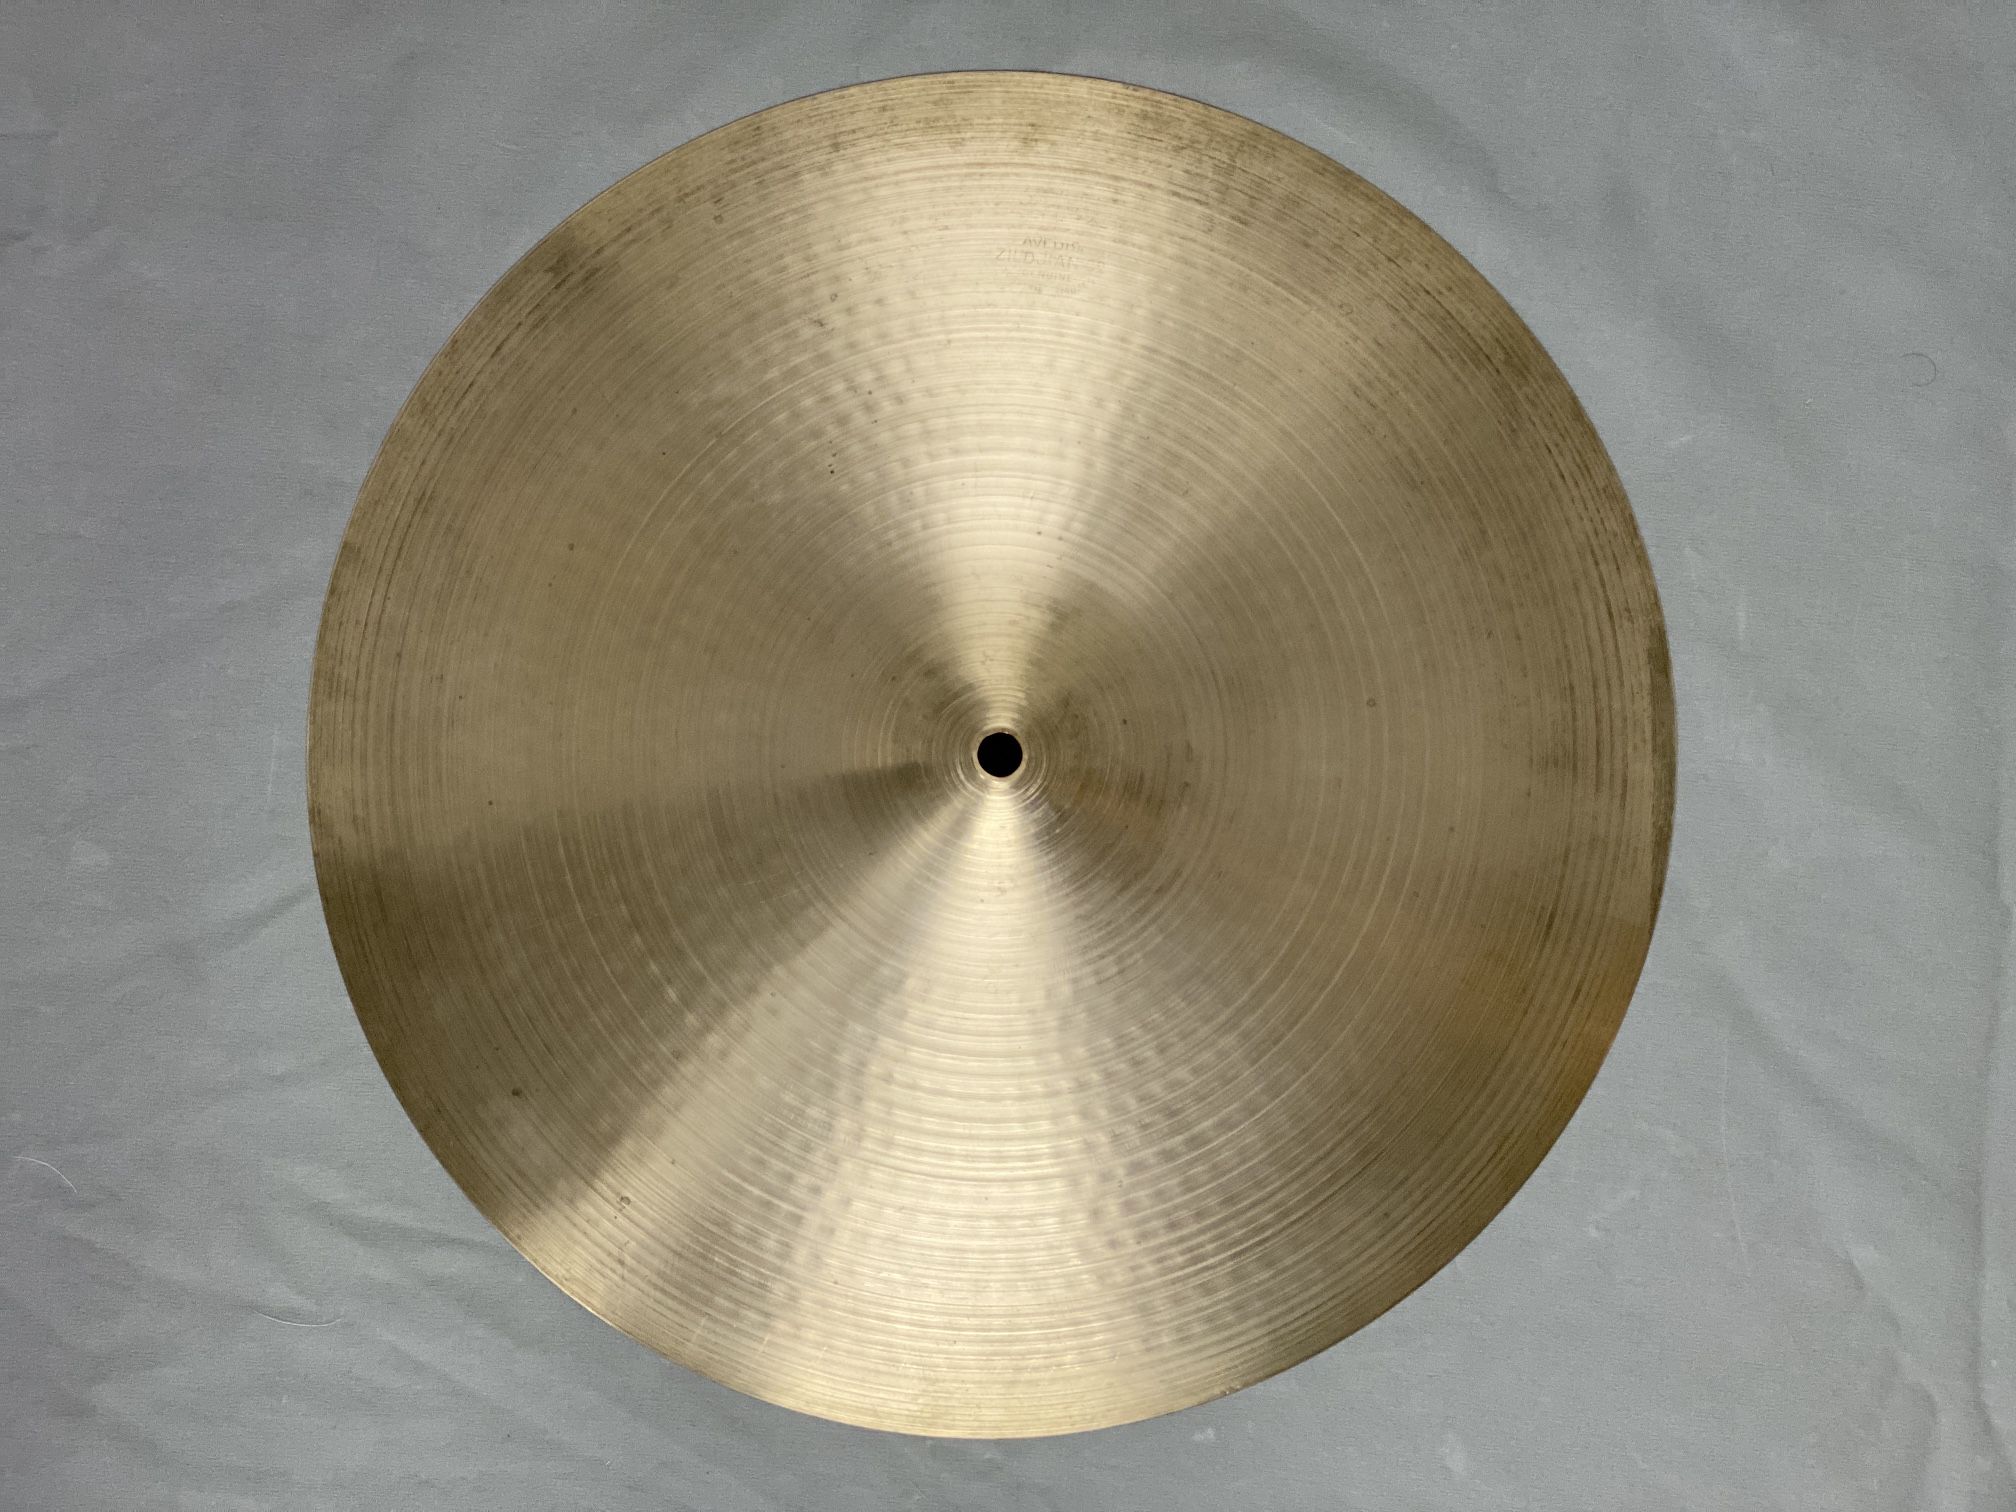 Zildjian 16” Thin Crash Cymbal 1960s